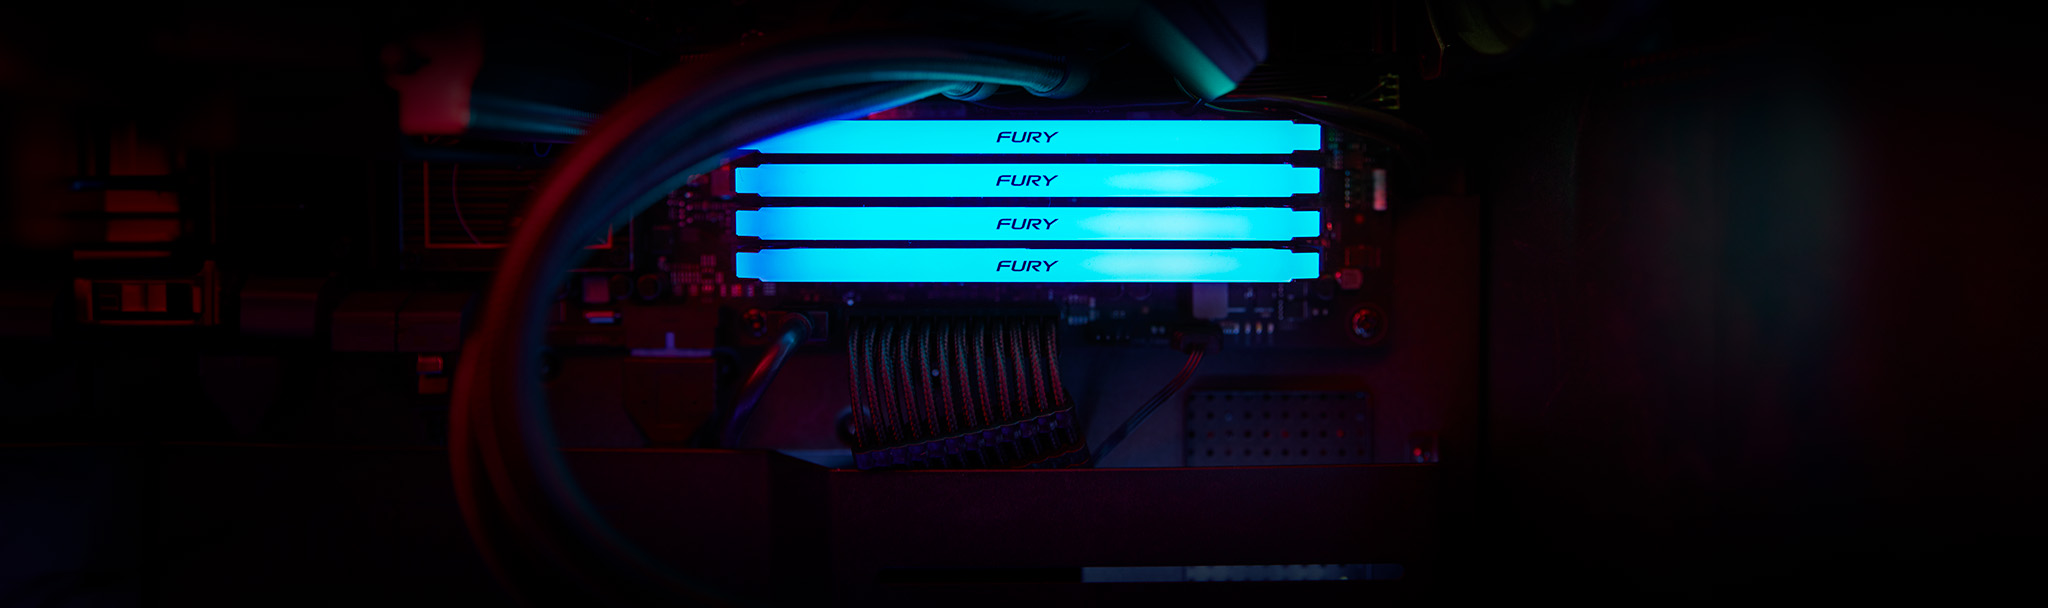 Empat modul Kingston FURY Beast DDR4 RGB memancarkan cahaya sian dalam casing PC hitam.